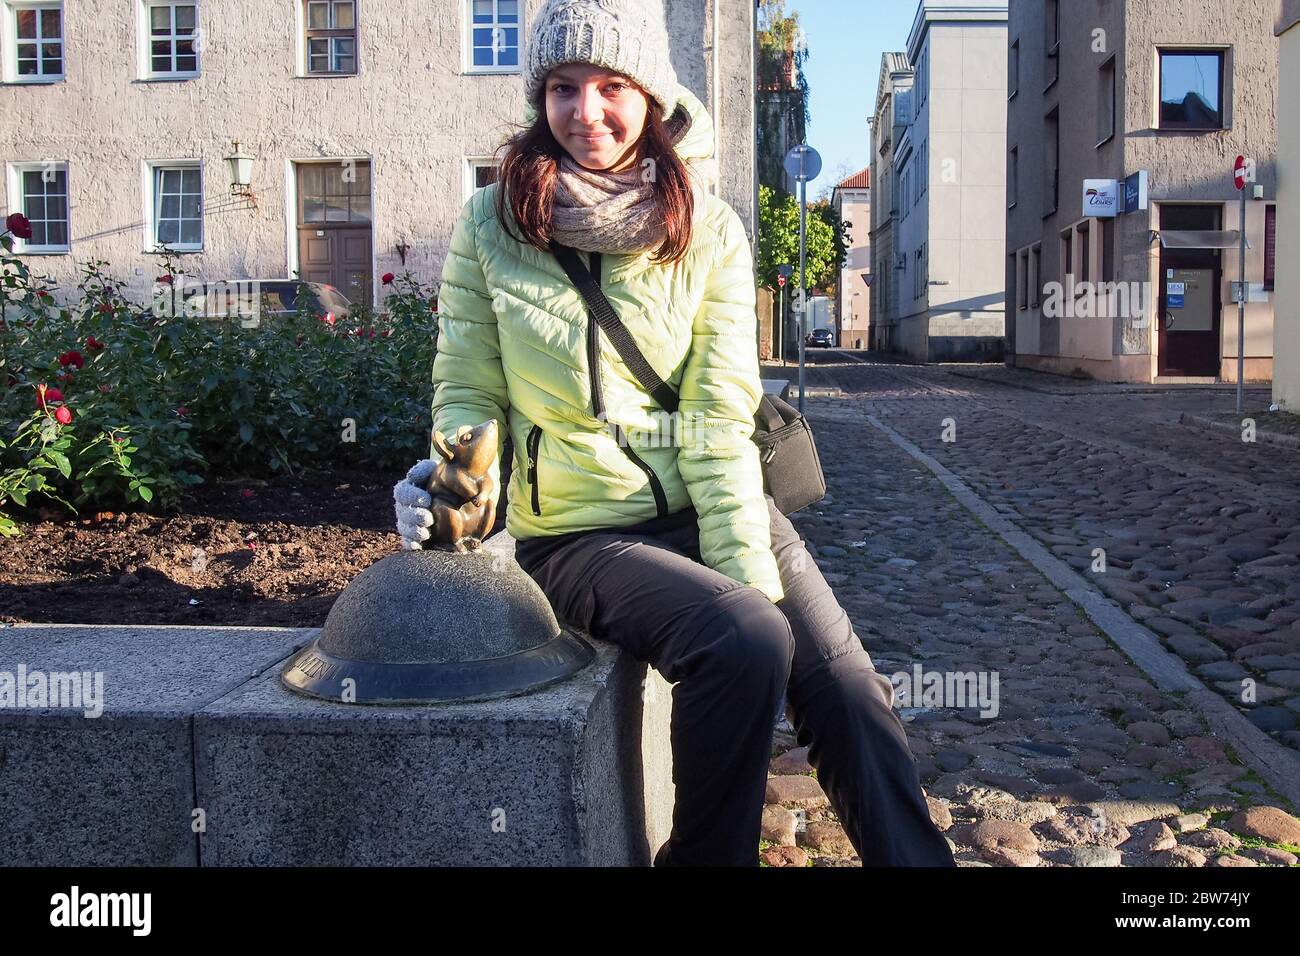 KLAIPEDA, LITAUEN - 15. OKTOBER 2019: Touristenmädchen mit der Bronzeskulptur "Steinlingas peliukas" (wunderbare kleine Maus) Stockfoto